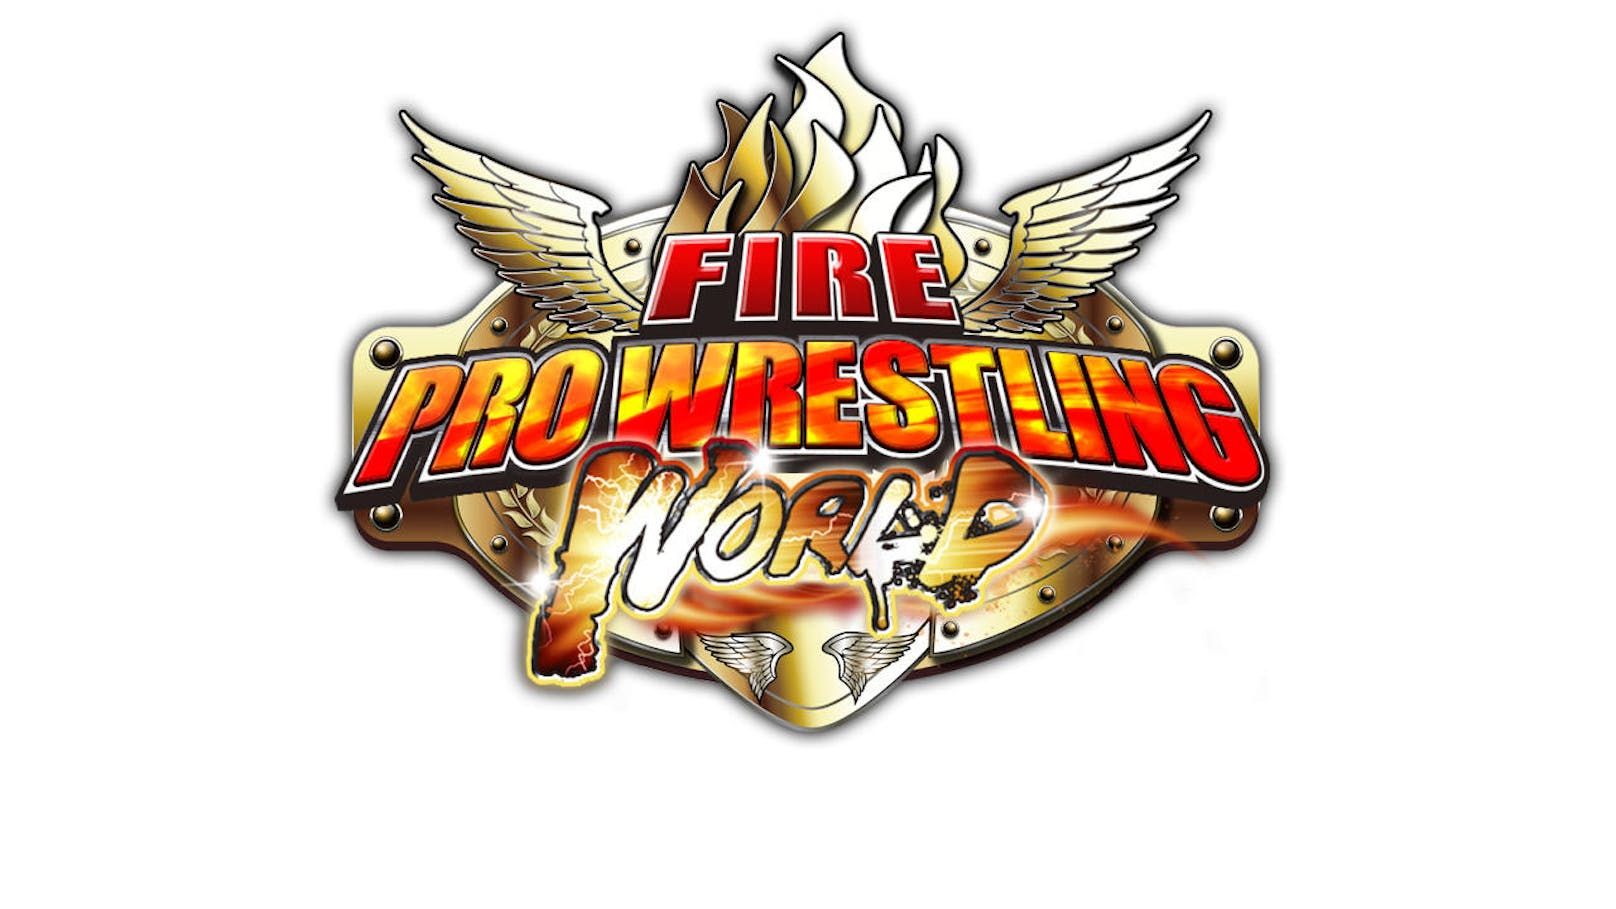 Wer sich einen High-End Wrestling-Titel erwartet, der sollte sich noch bis zu WWE 2K19 gedulden. Fire Pro Wrestling World ist ein klassisches Retro-Game mit ebensolcher Grafik. Zwar kann der Titel ein Klassiker für Liebhaber werden, die knapp 45 Euro sind aber doch sehr hoch angesetzt.